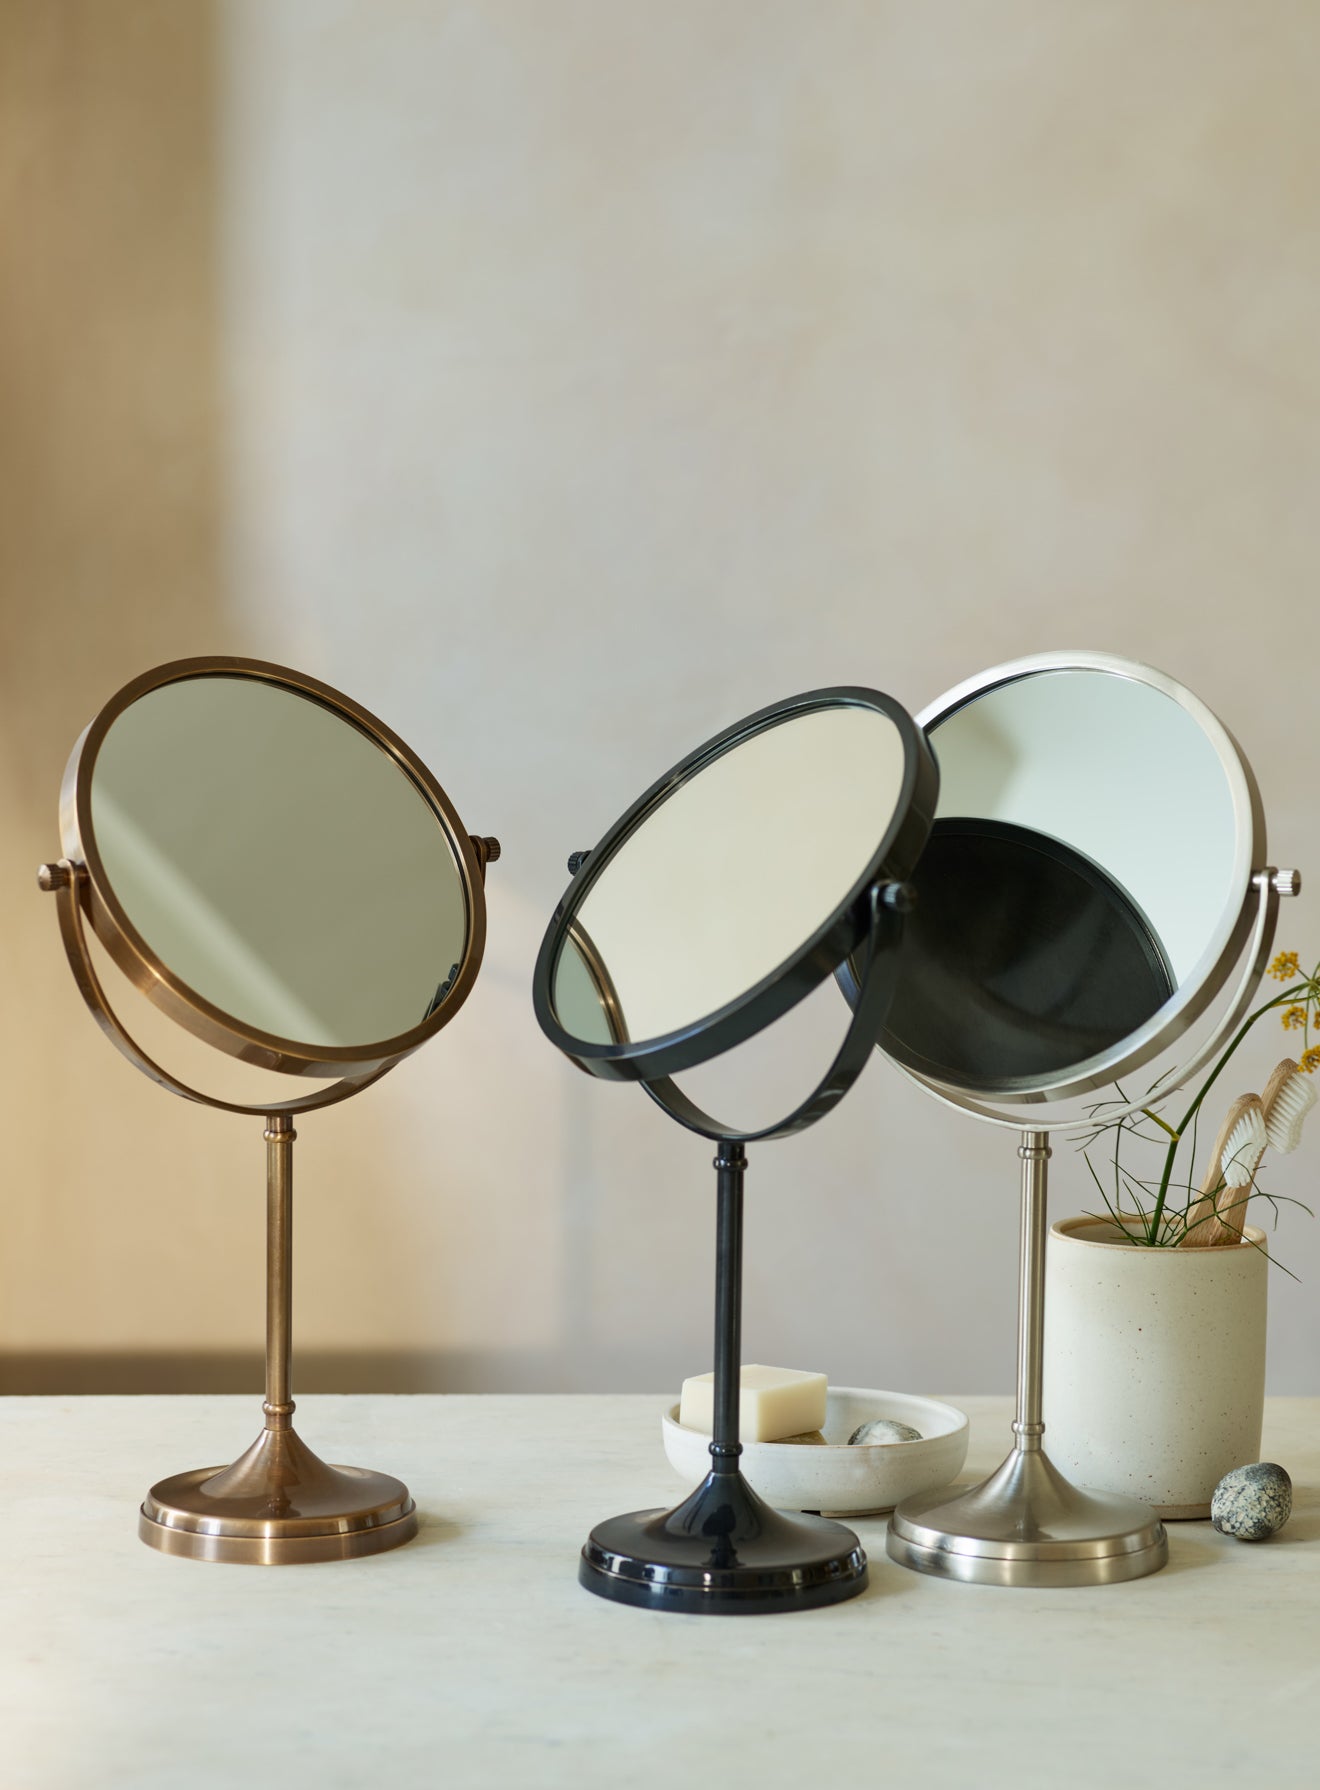 Bilton Pedestal Mirror, Antique Brass